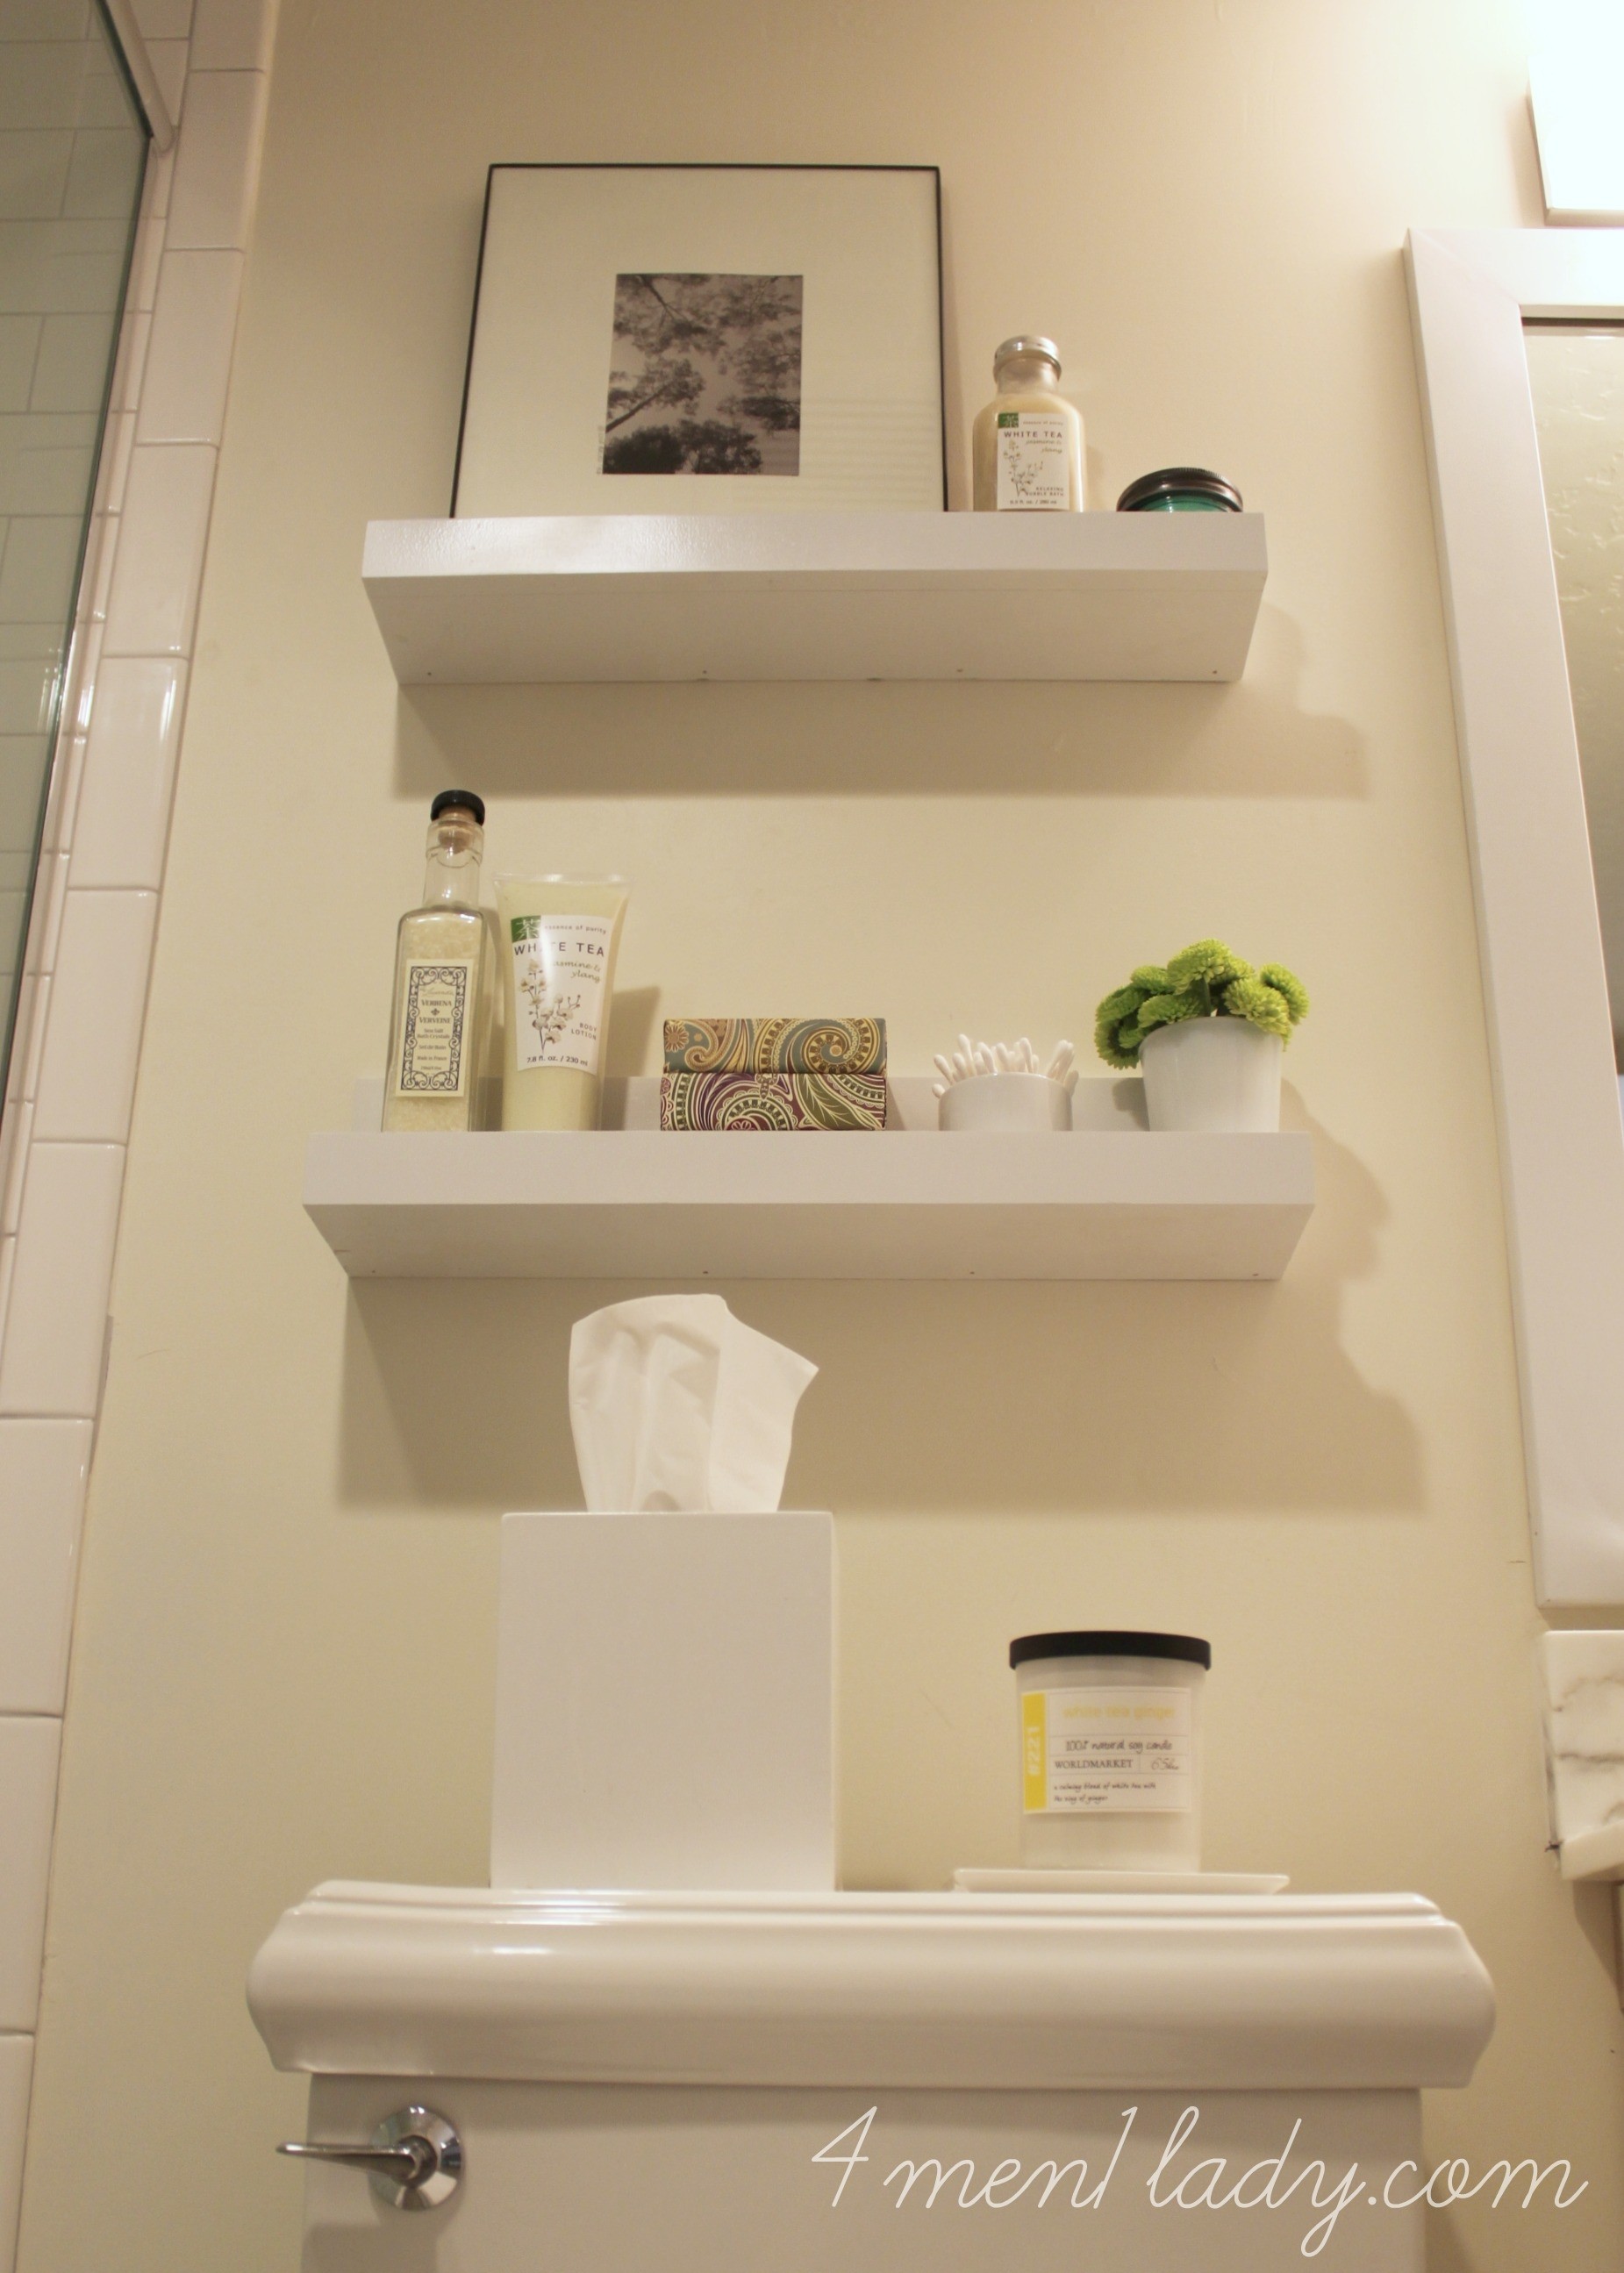 Shelves above toilet